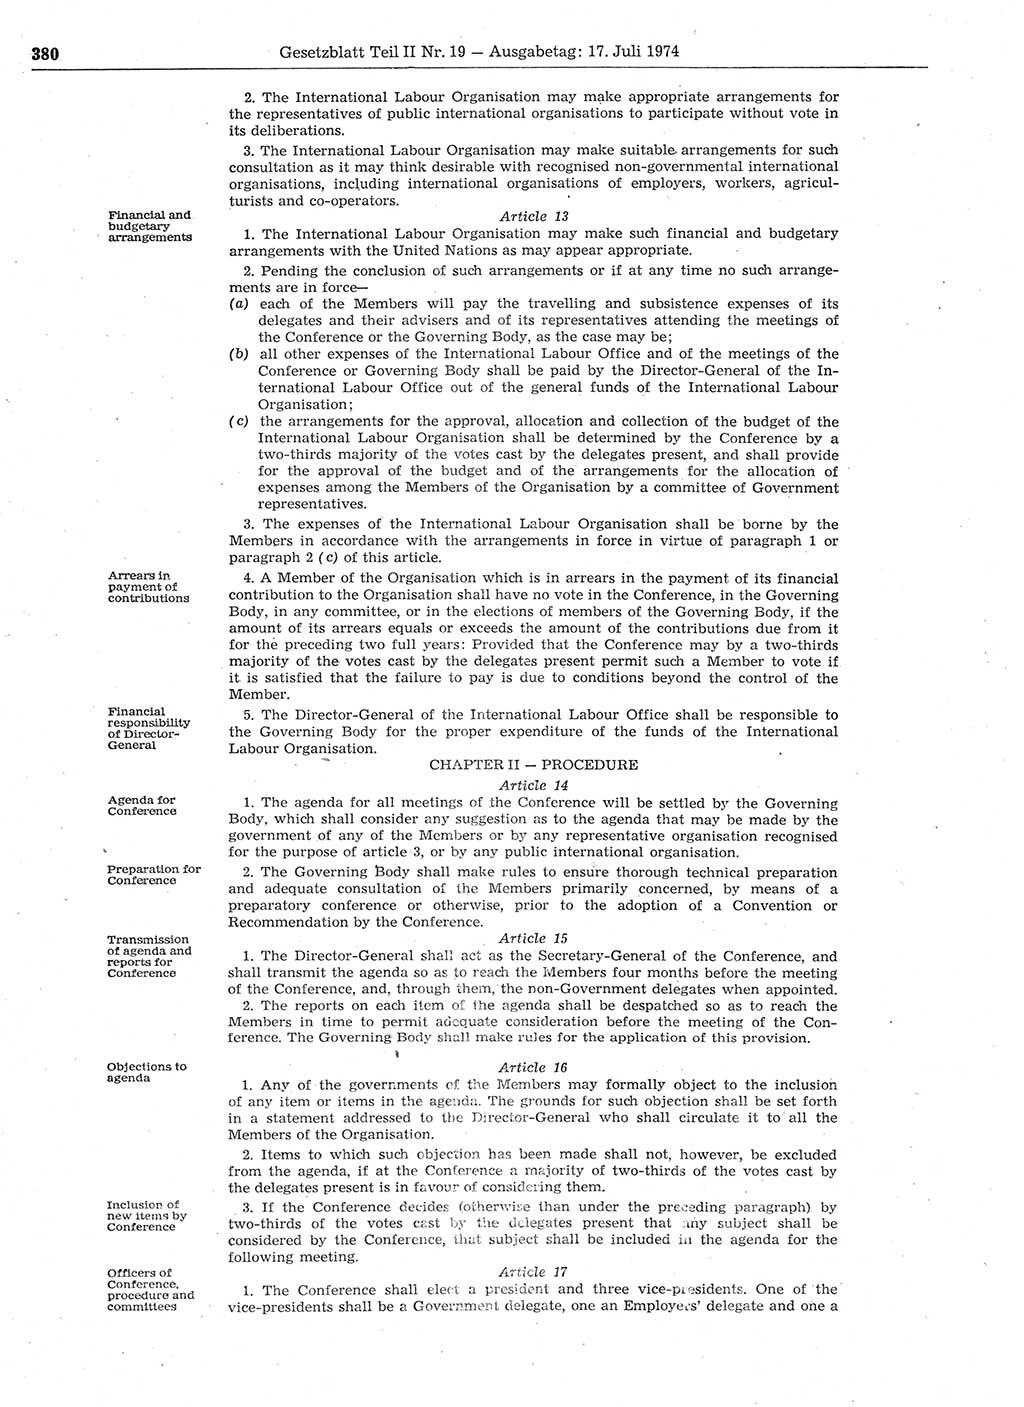 Gesetzblatt (GBl.) der Deutschen Demokratischen Republik (DDR) Teil ⅠⅠ 1974, Seite 380 (GBl. DDR ⅠⅠ 1974, S. 380)